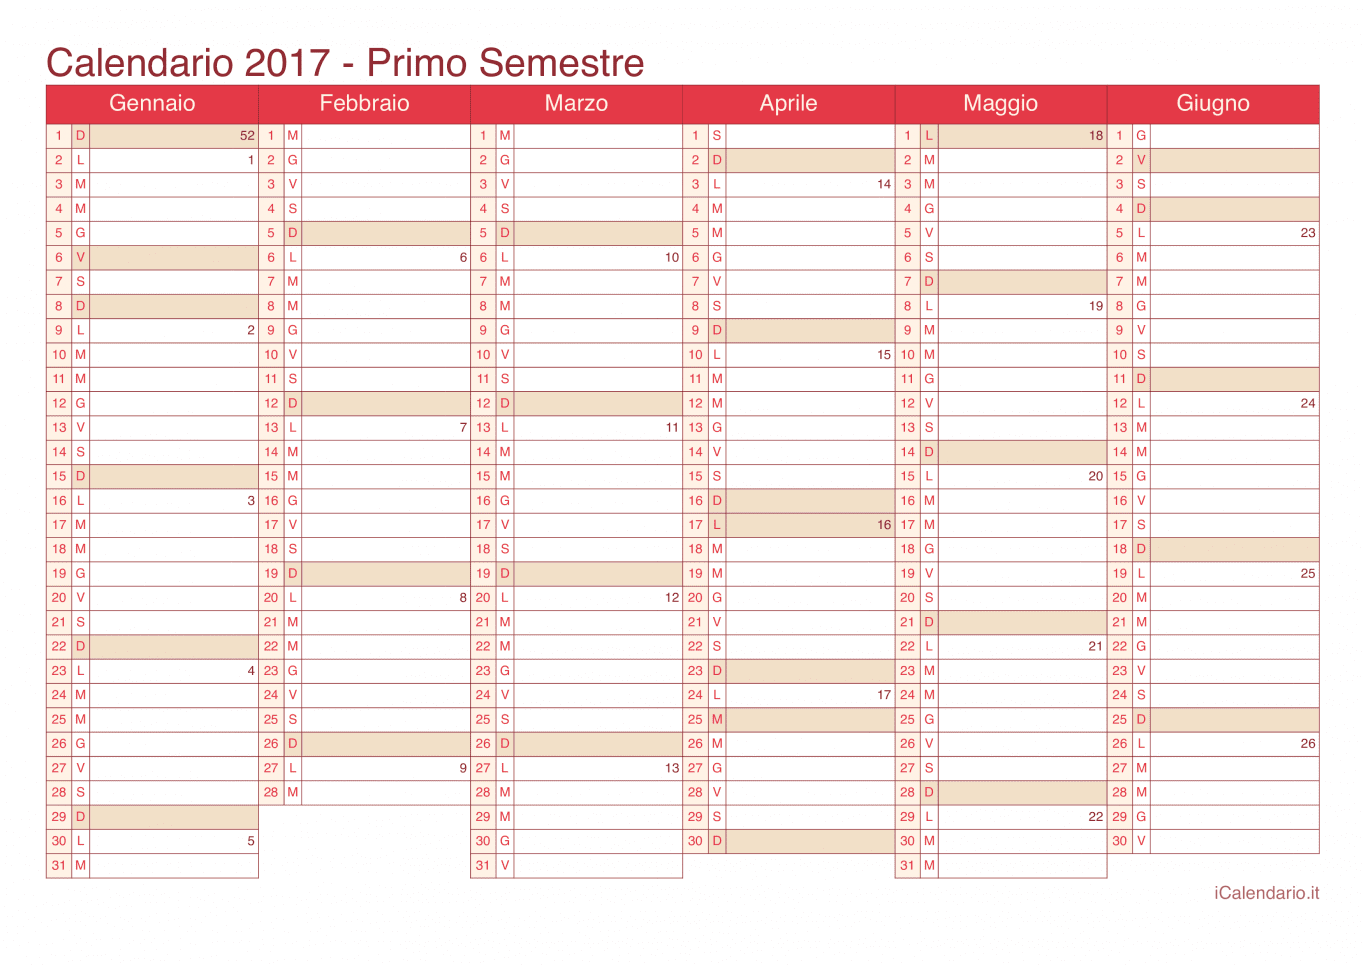 Calendario semestrale con numeri delle settimane 2017 - Cherry